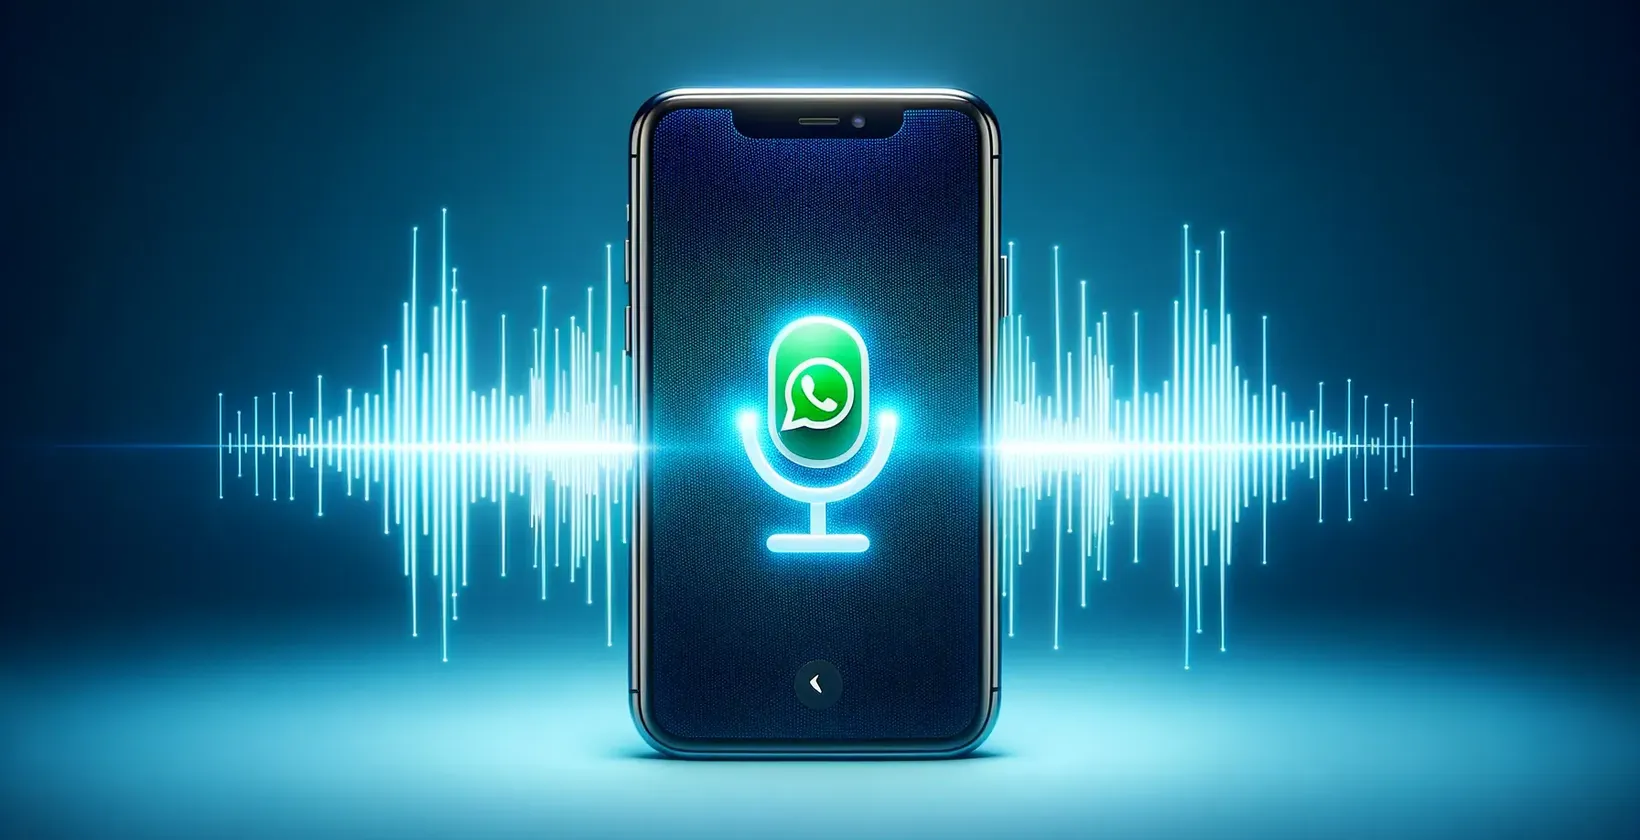 Slika, ki predstavlja koncept WhatsApp glasovnega klica s funkcijo narekovanja